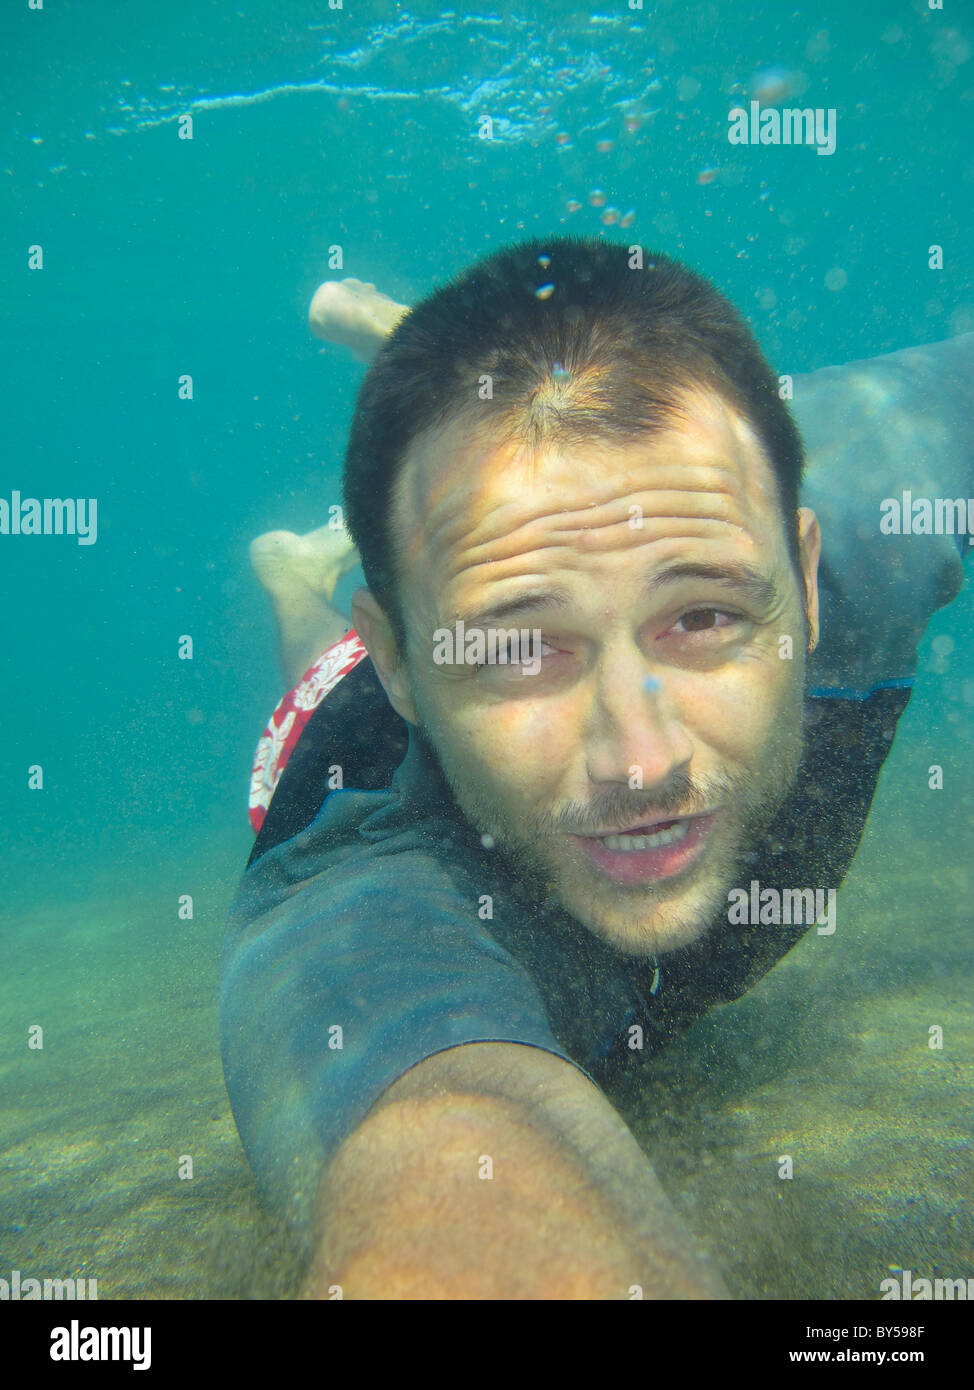 El hombre bajo el agua en busca de agua arenosa pulpo Foto de stock